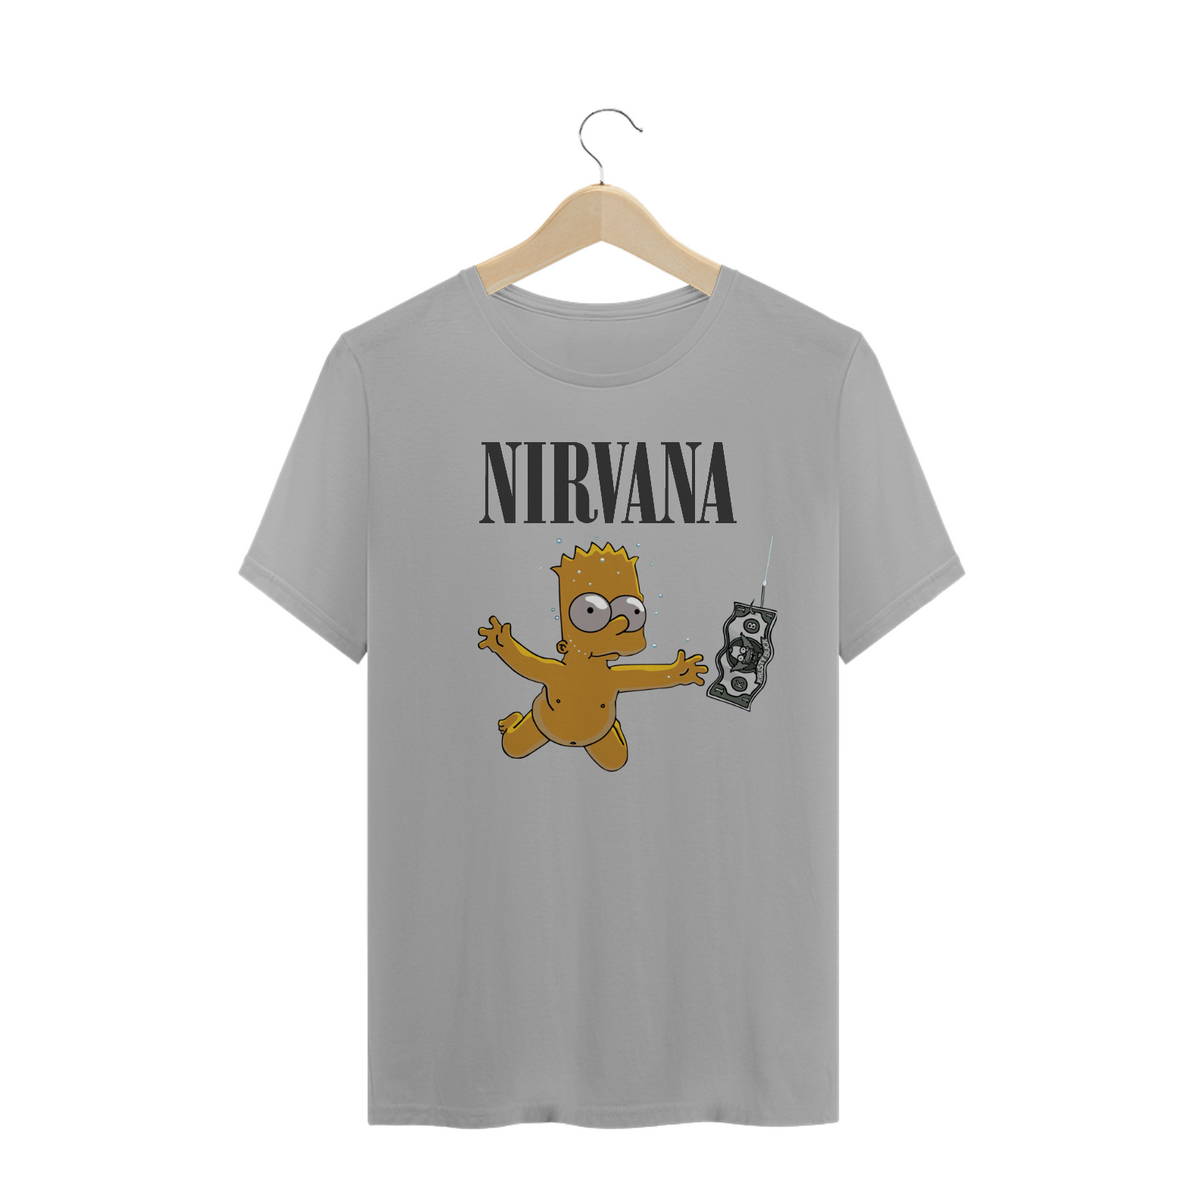 Nome do produto: Bandas - Camisa Nirvana Bart